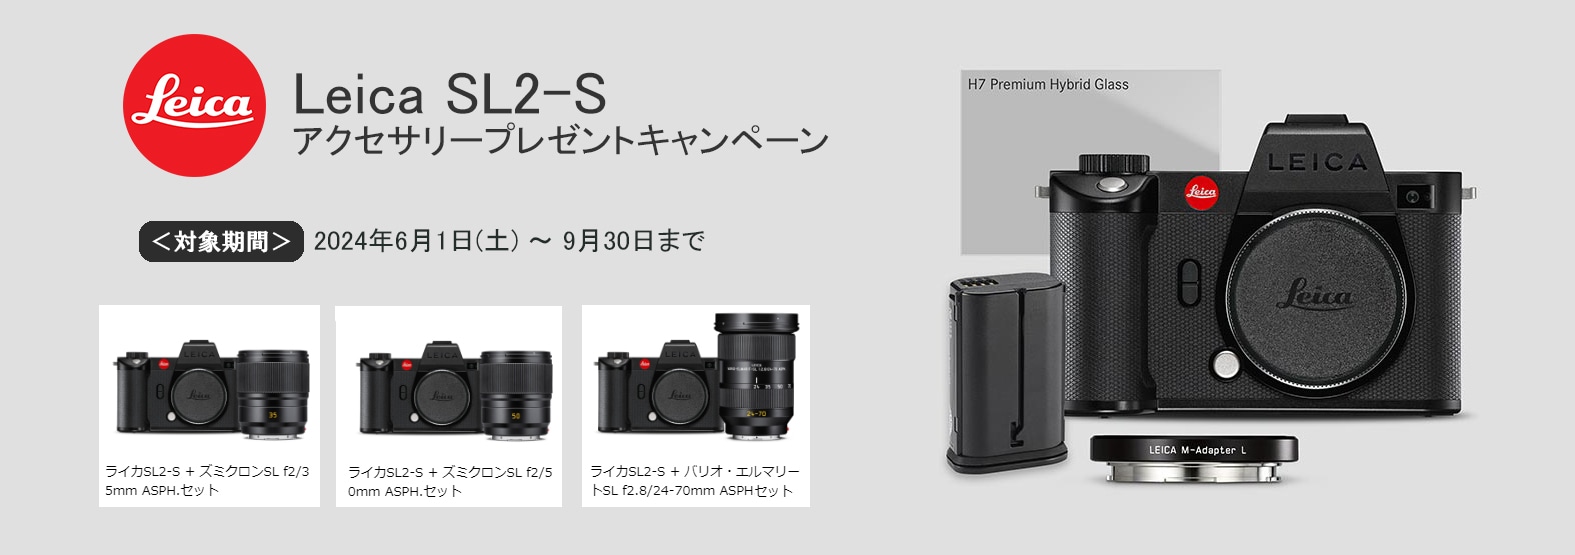 9/30キャンペーン】Leica(ライカ) SL2-S ミラーレスシステムカメラ 